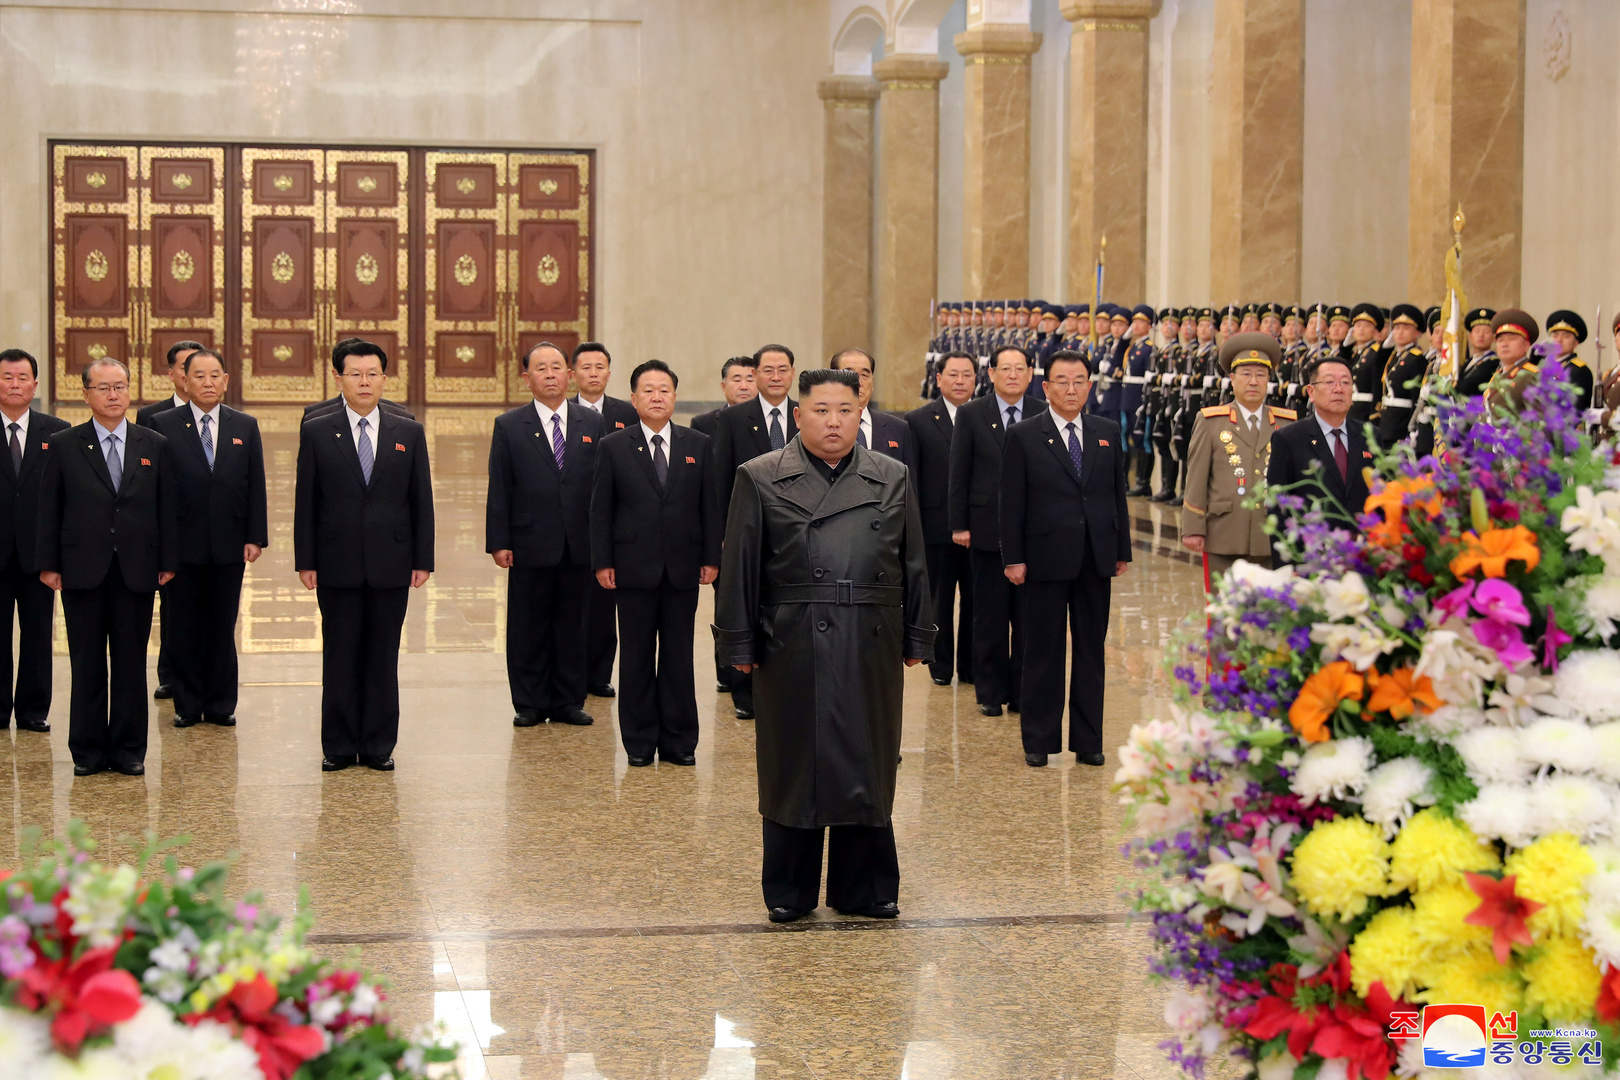 الزعيم الكوري الشمالي يزور ضريح والده في ذكرى ميلاده دون احتفالات ضخمة